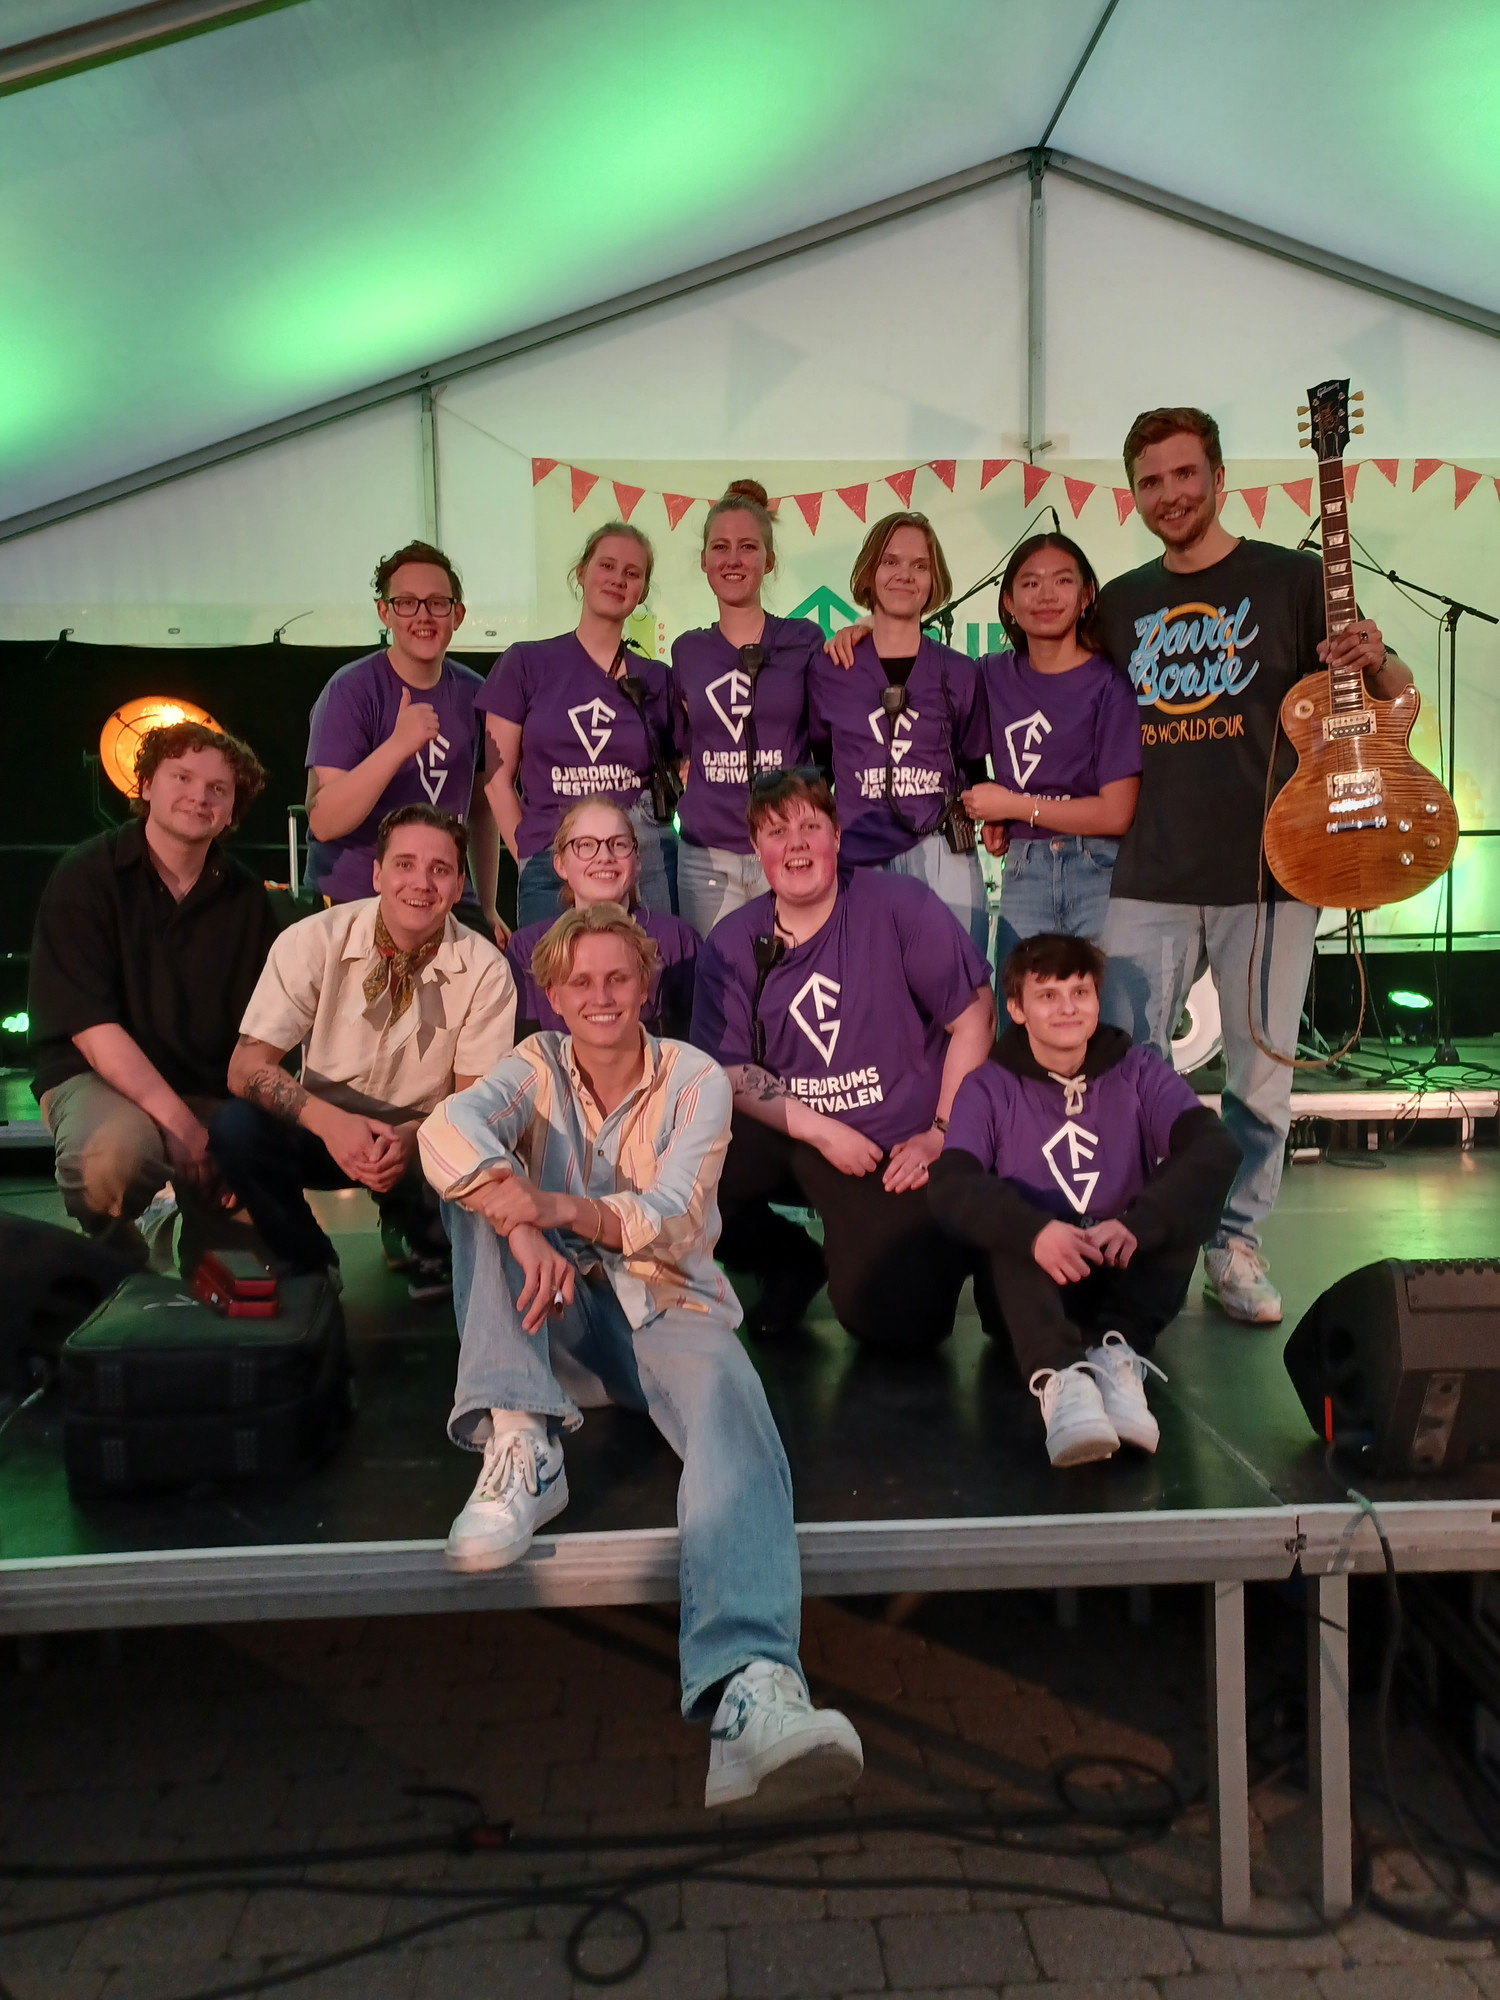 Bildet viser ungdommene i unge arrangører som står oppstilt på scenen med festival t-skjorter rundt artisten og bandet Bølgen etter gjennomført ungdomskonsert.